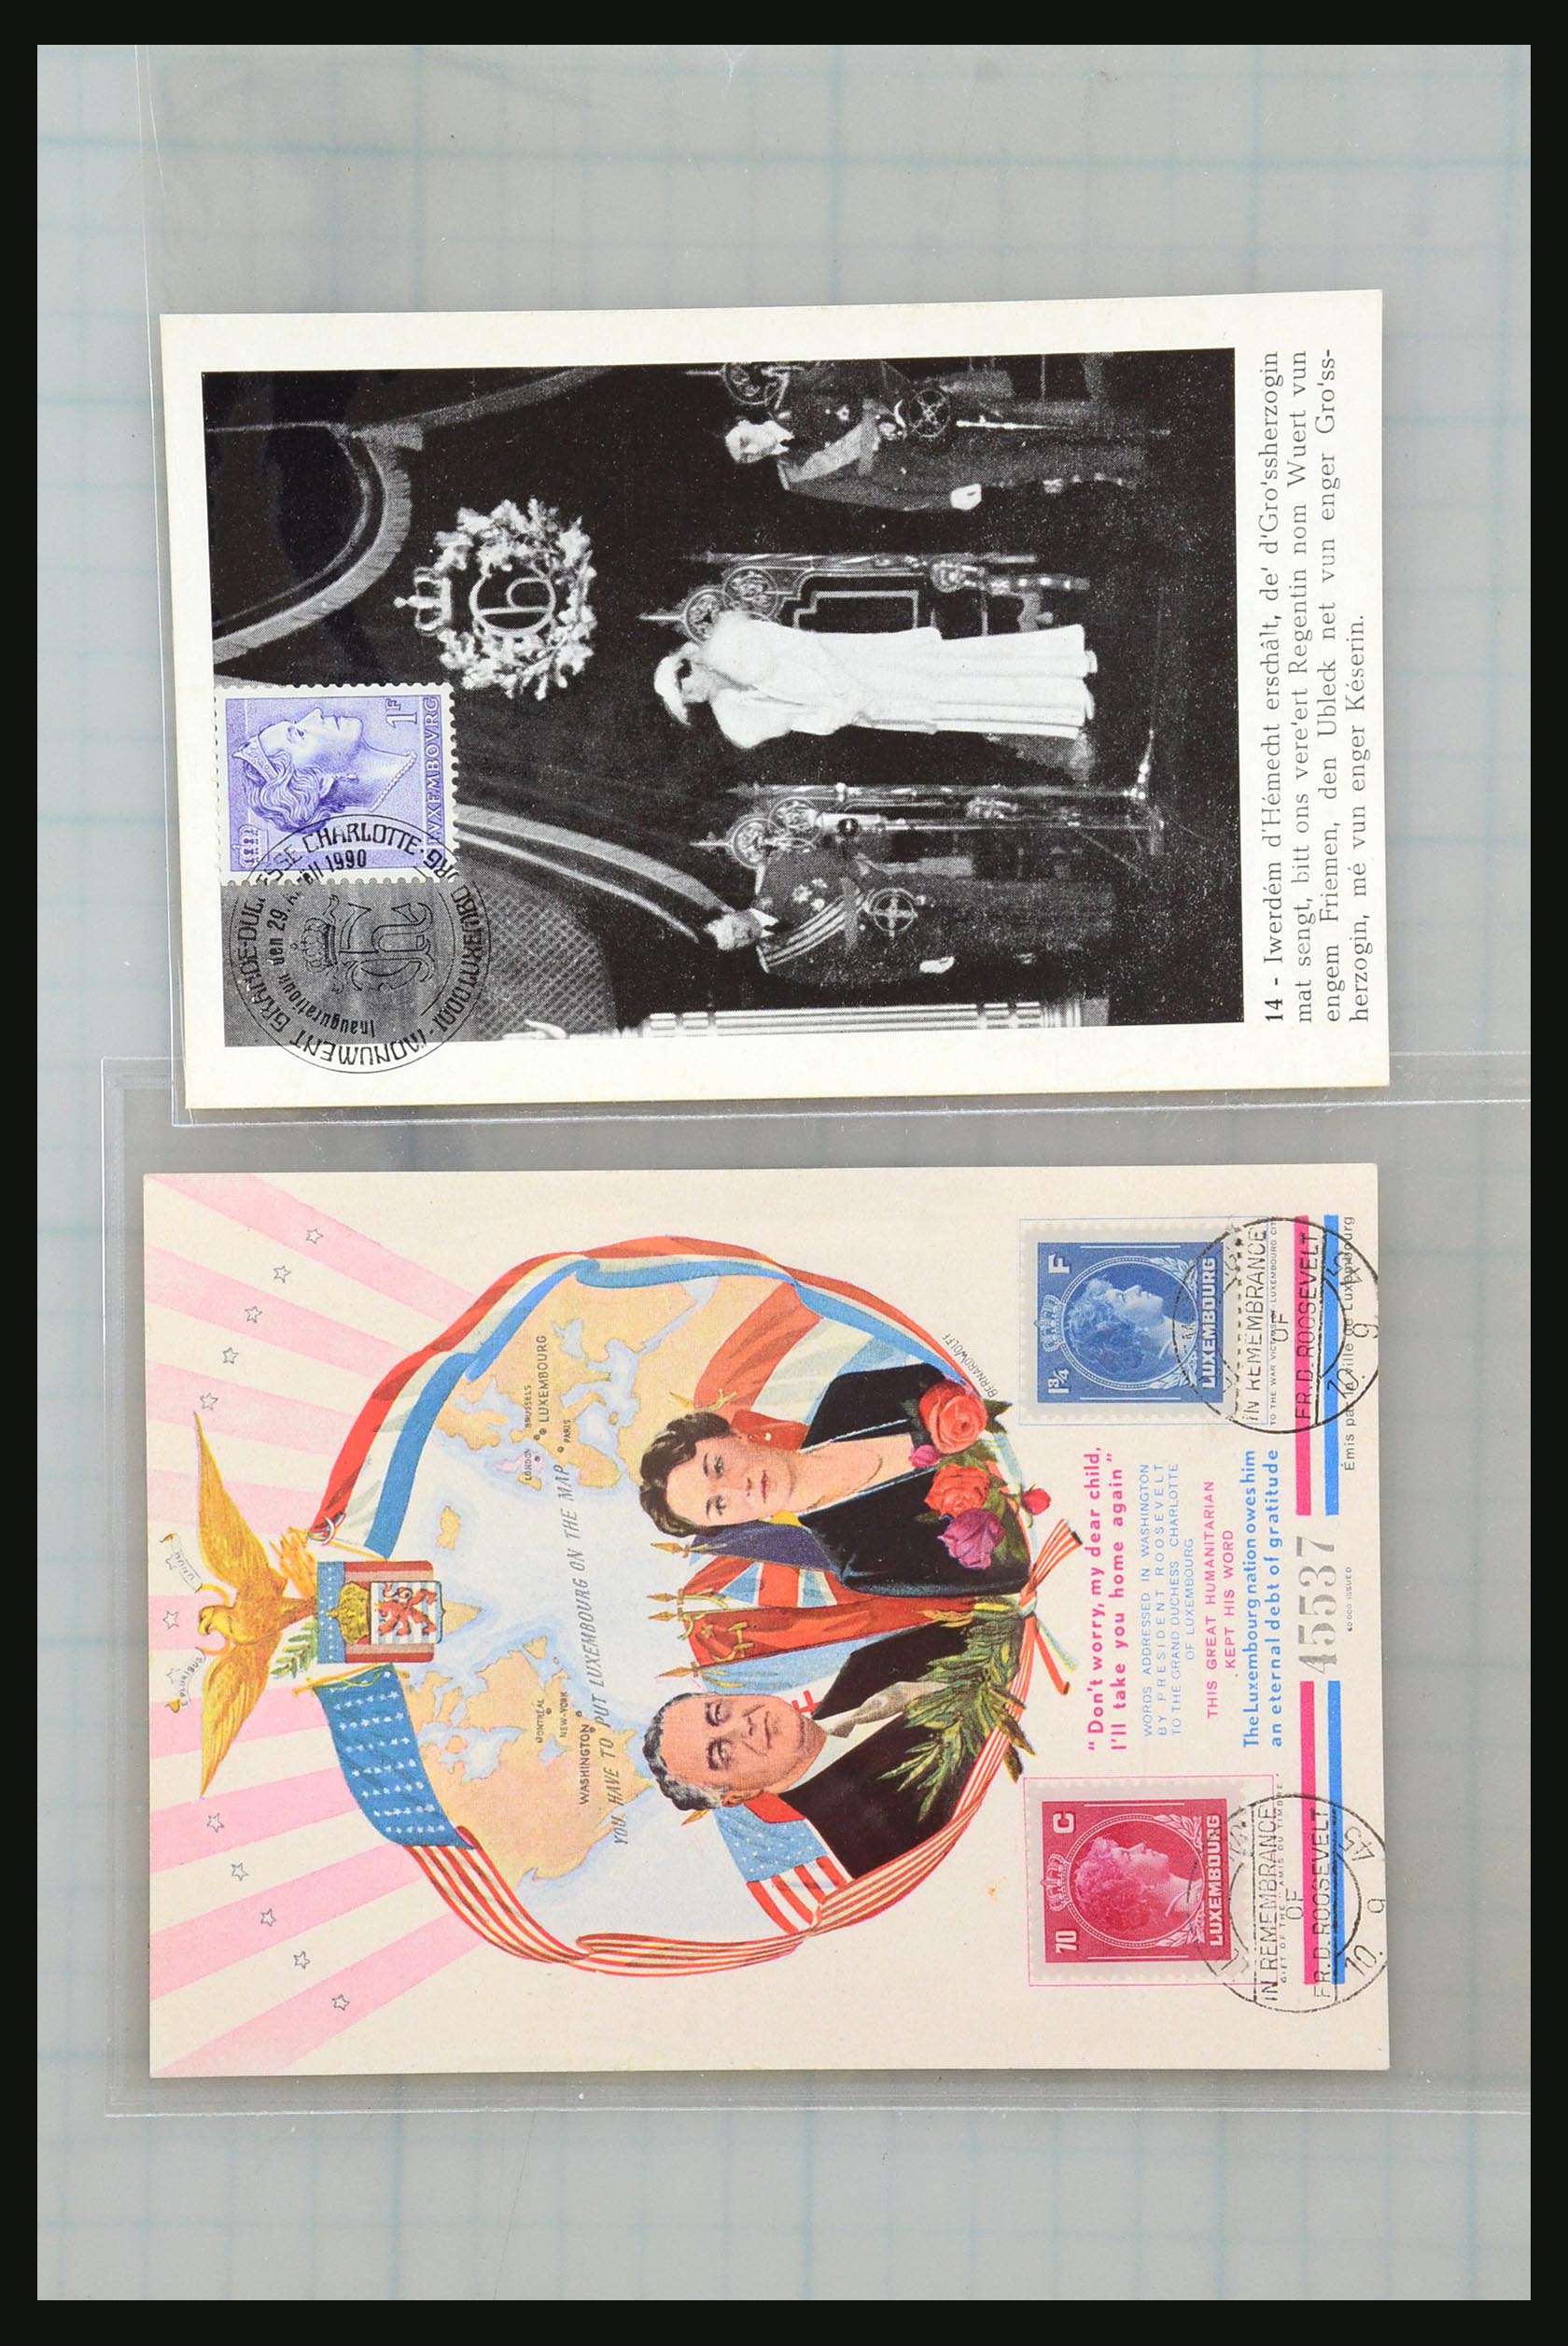 31358 008 - 31358 Portugal/Luxemburg/Griekenland brieven 1880-1960.